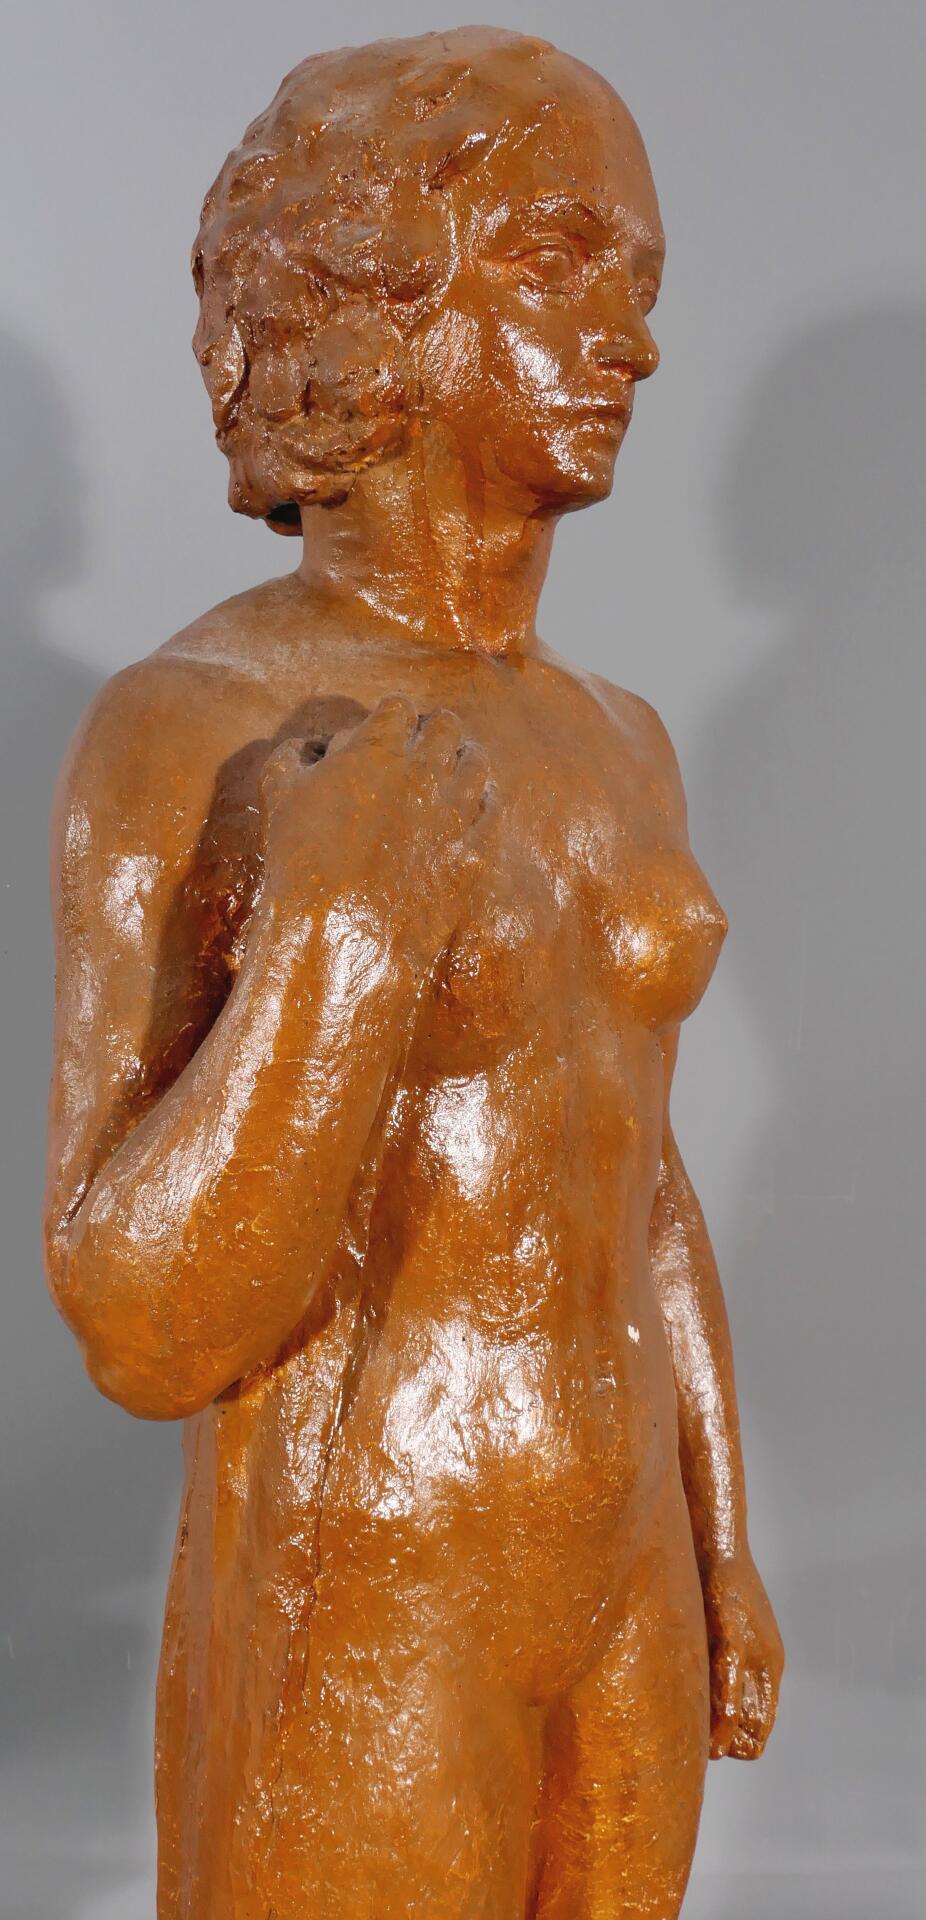 HEINRICH SCHLOTTER: "Die Badende" - Stukko, Standfigur von 1926. Nackte, stehende junge Frau, ihre - Image 5 of 15